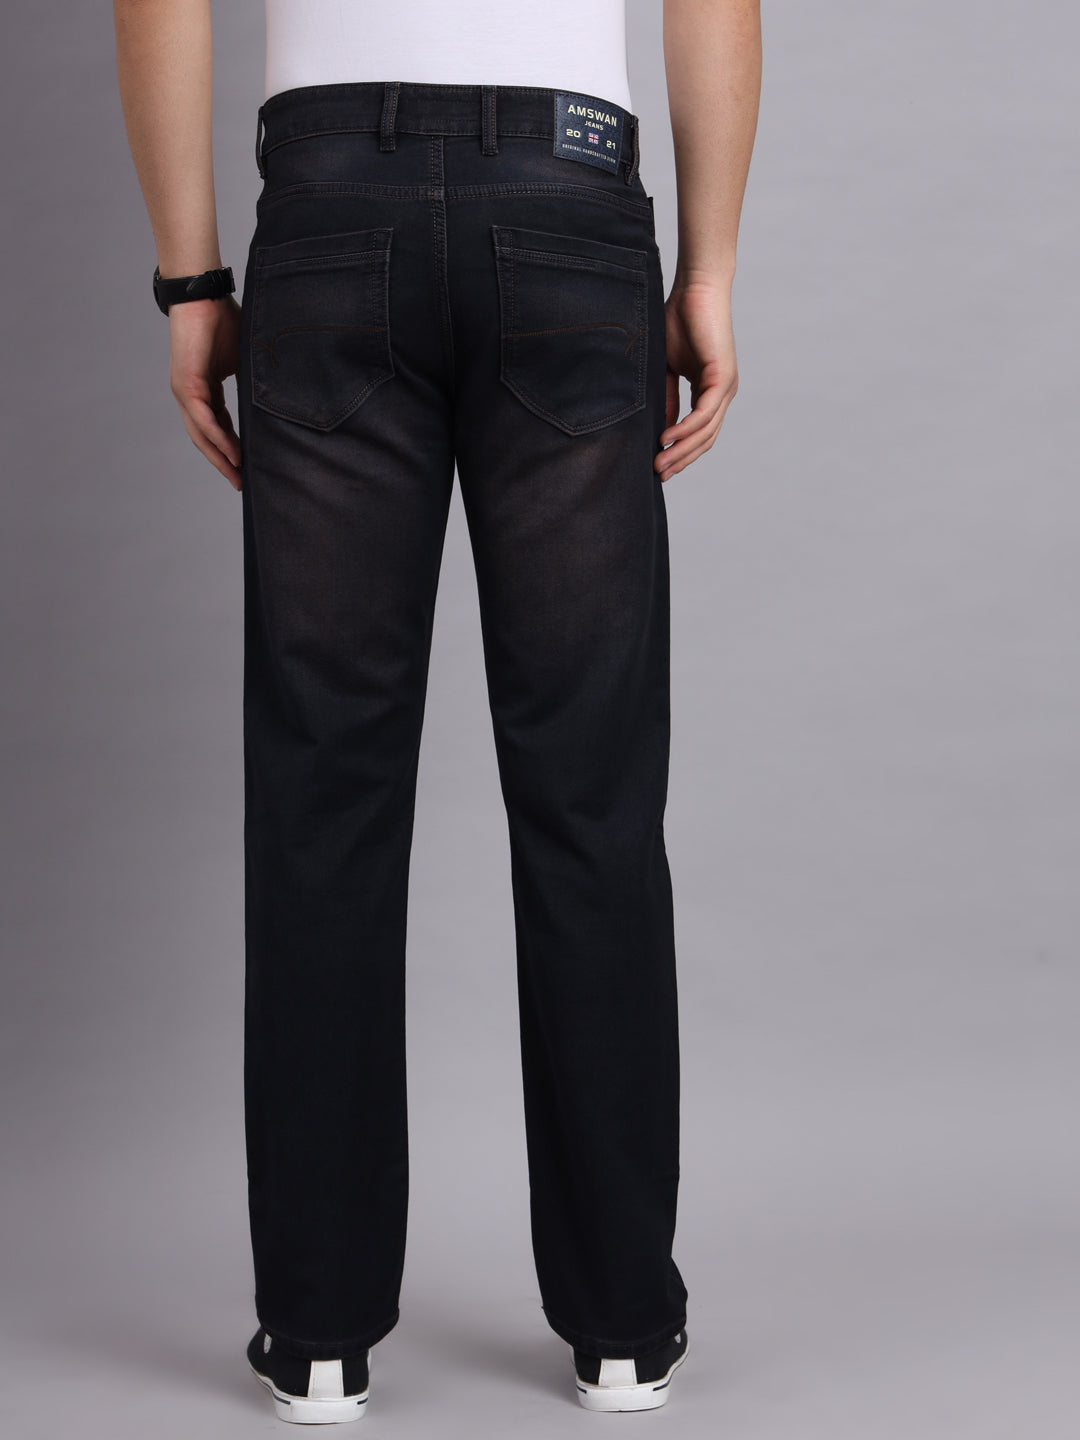 Amswan  Men's Dark Charcoal Jeans